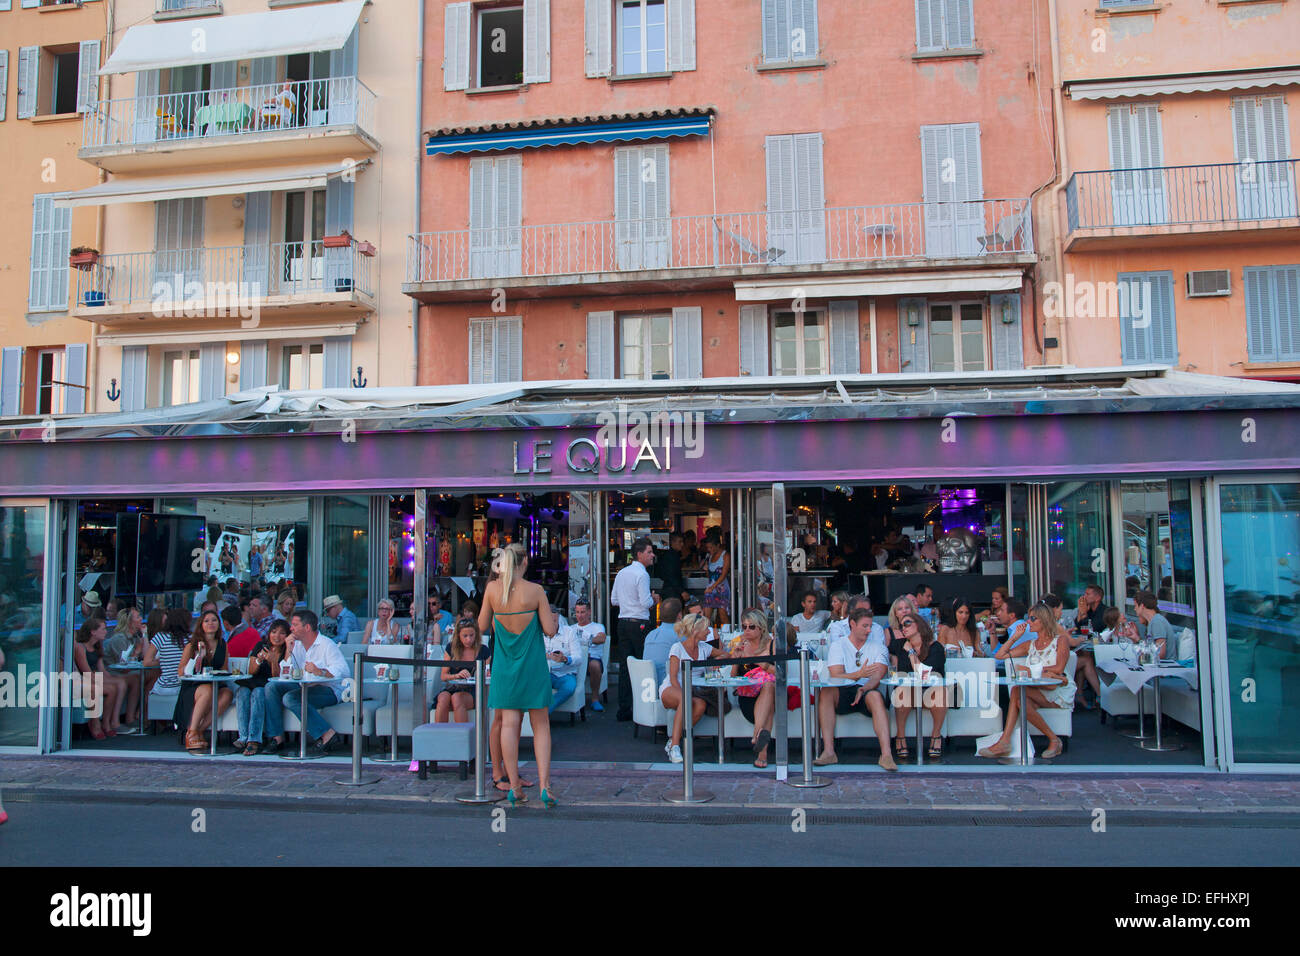 Menschen in einem Restaurant, Cafe, Le Quai, Hafen, Sant Tropez, St. Tropez, Cote d Azur, Frankreich, Europa Stockfoto